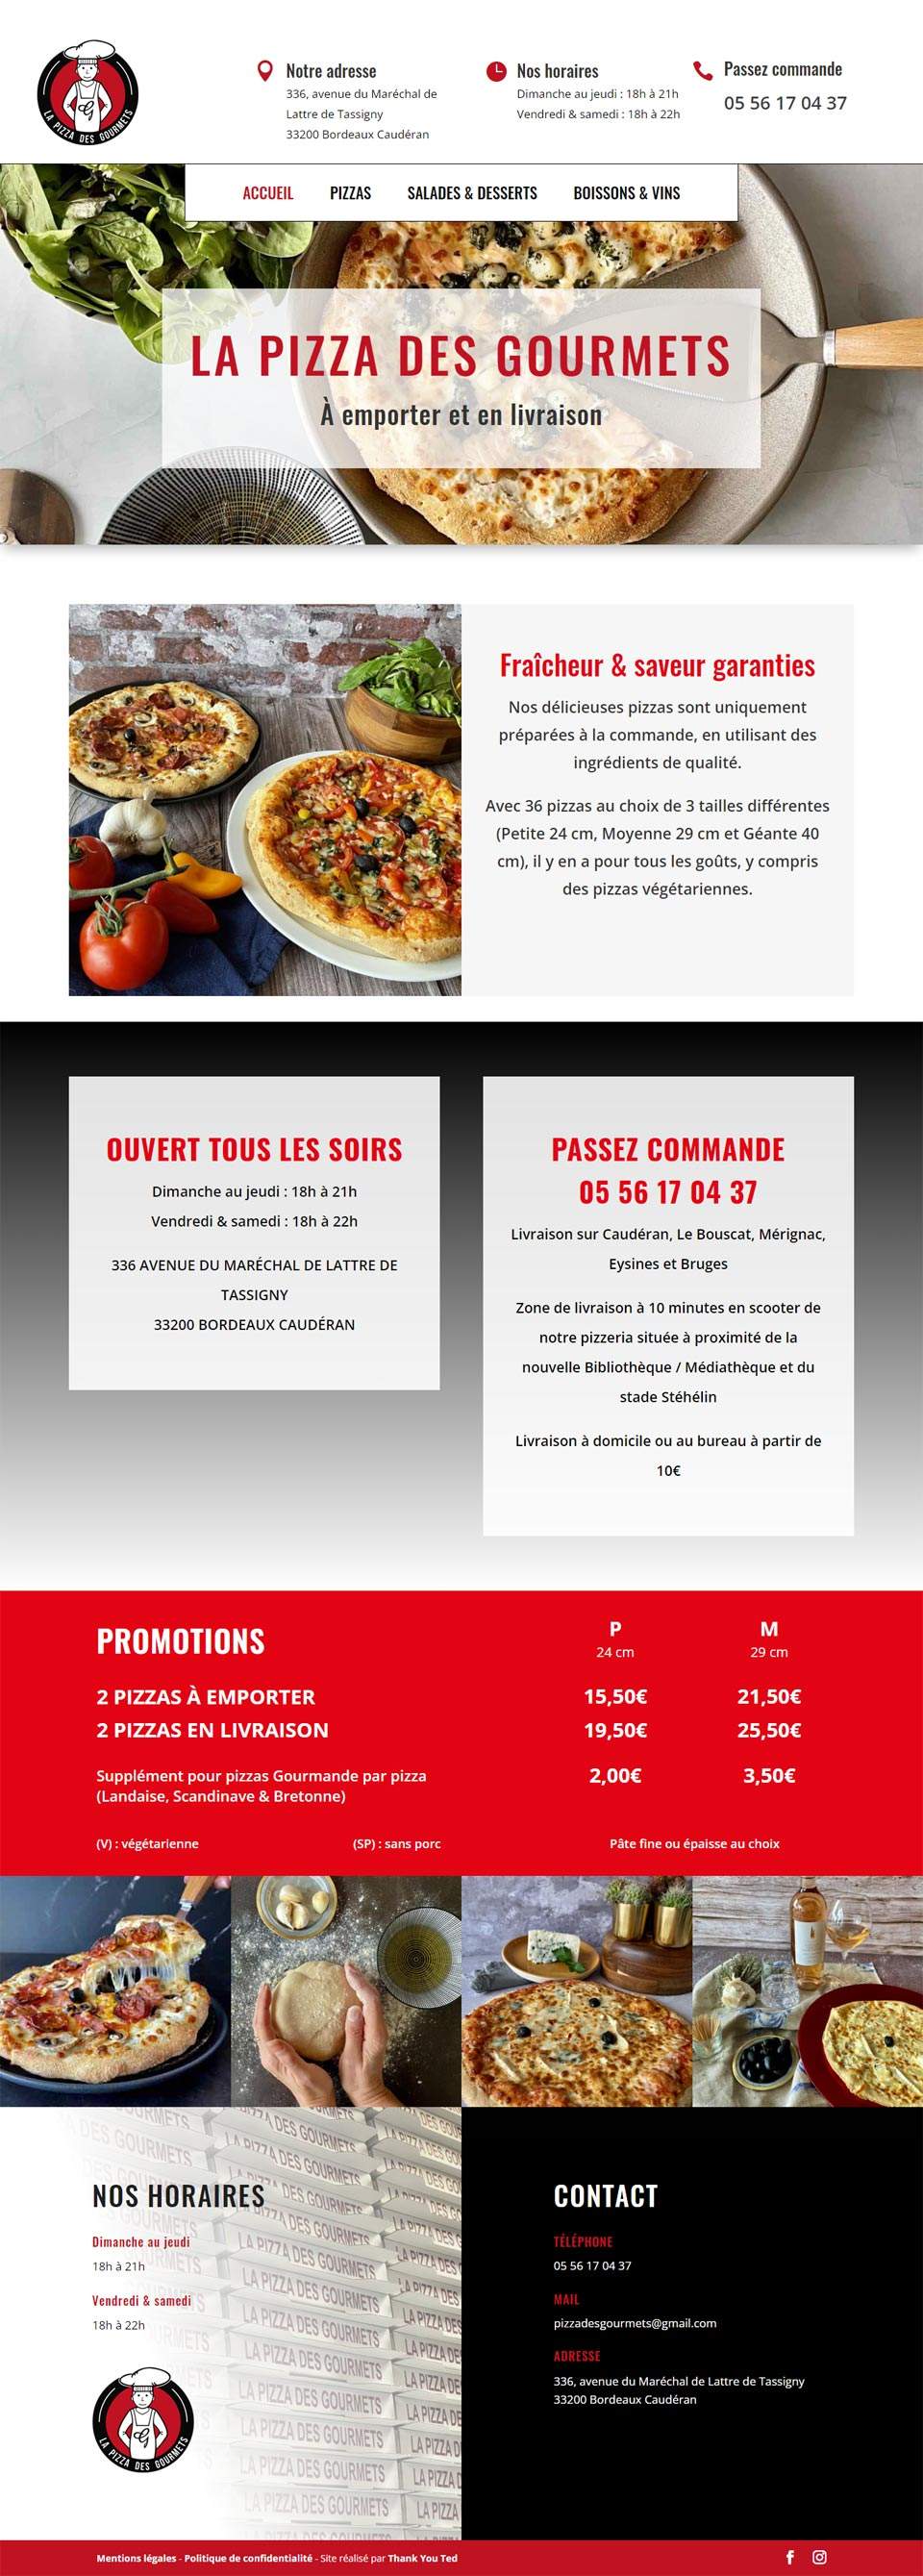 Page d'accueil de la pizza des gourmets 